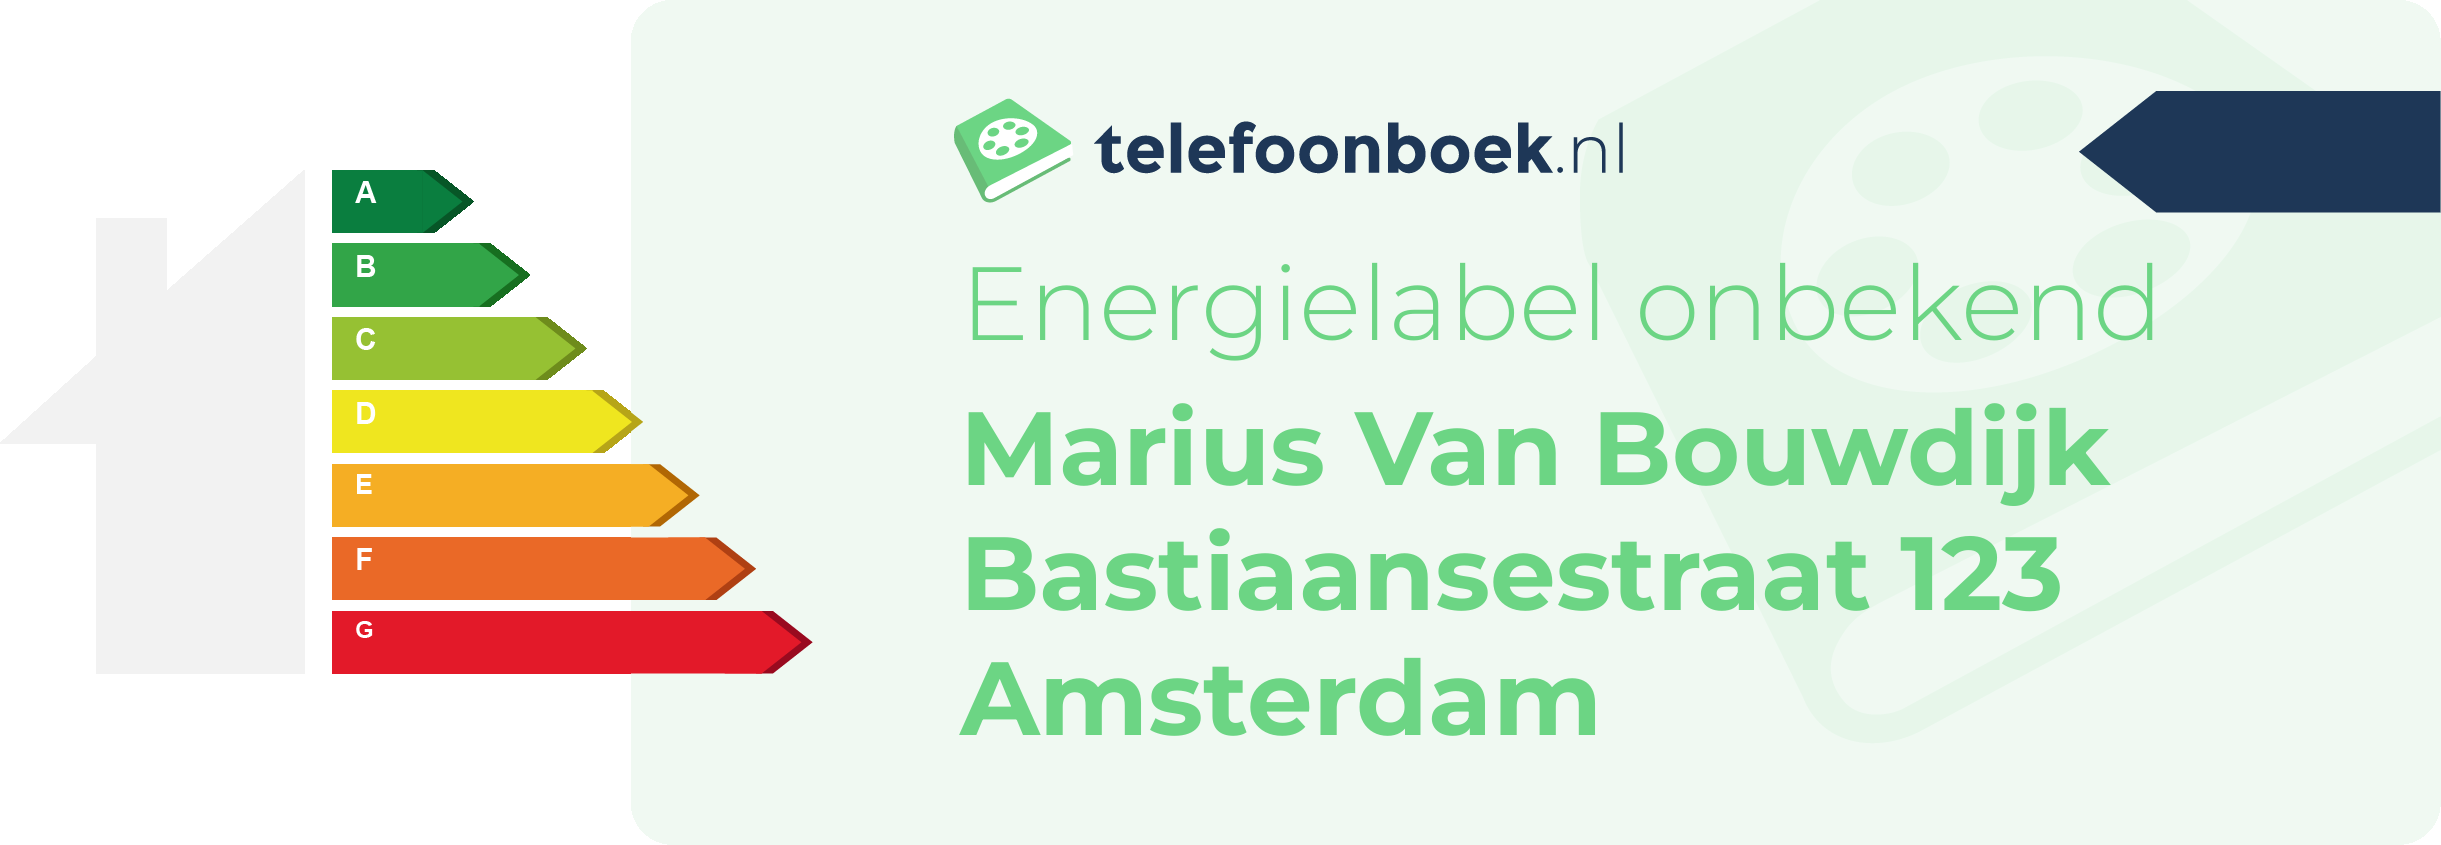 Energielabel Marius Van Bouwdijk Bastiaansestraat 123 Amsterdam